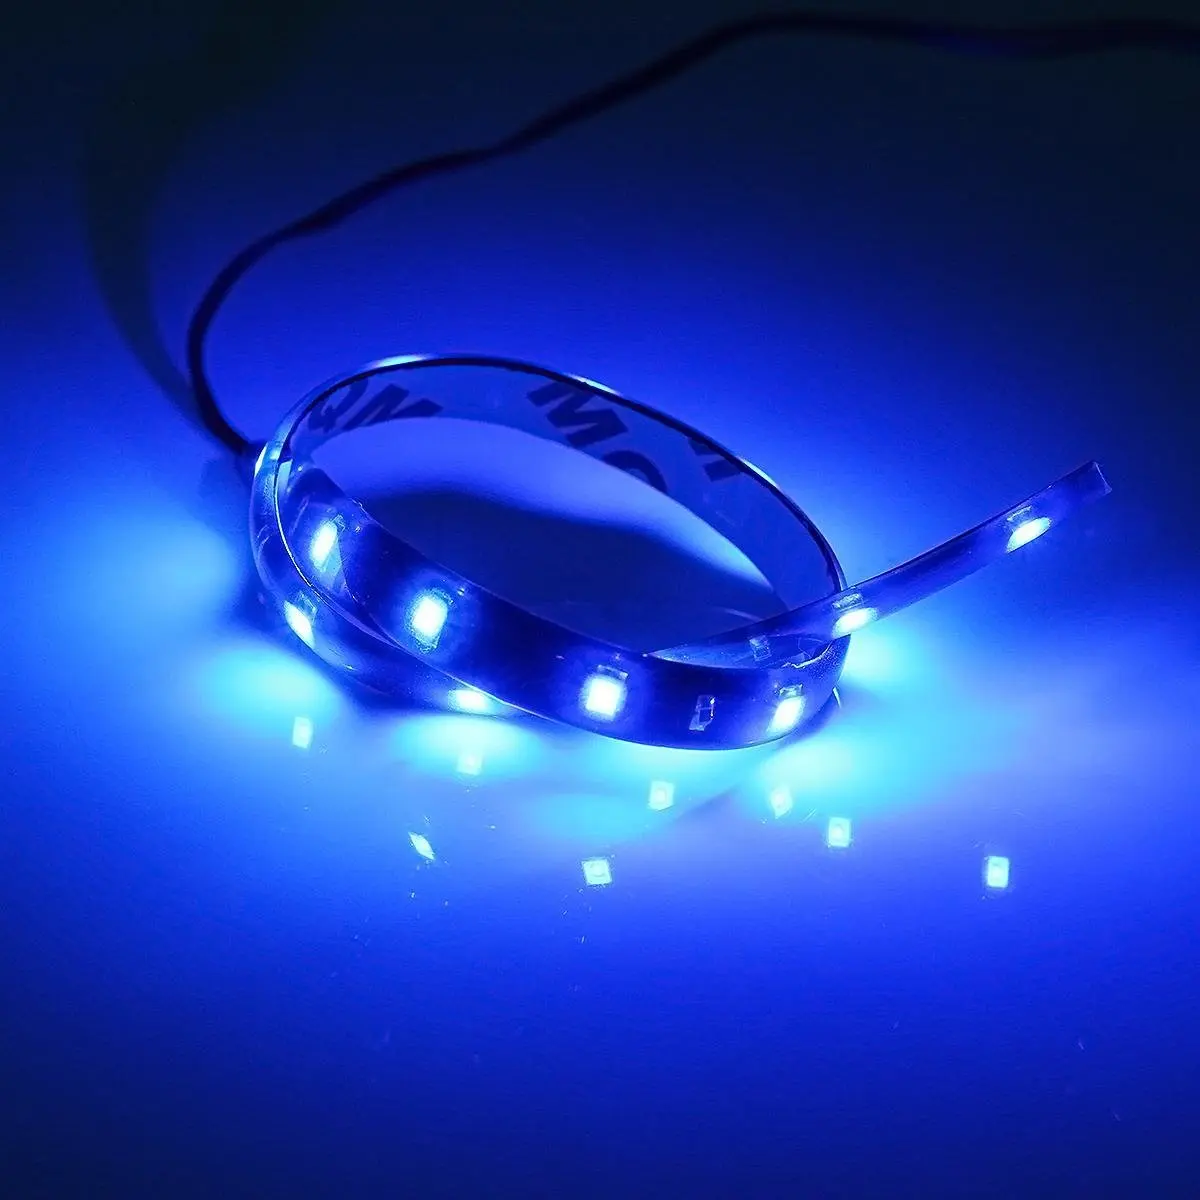 30 см синий светильник s Гибкая светодиодная лента светильник водонепроницаемый SMD 15 светодиодный s Авто декоративная лента вибростойкие Противотуманные фары глаз орла лампа